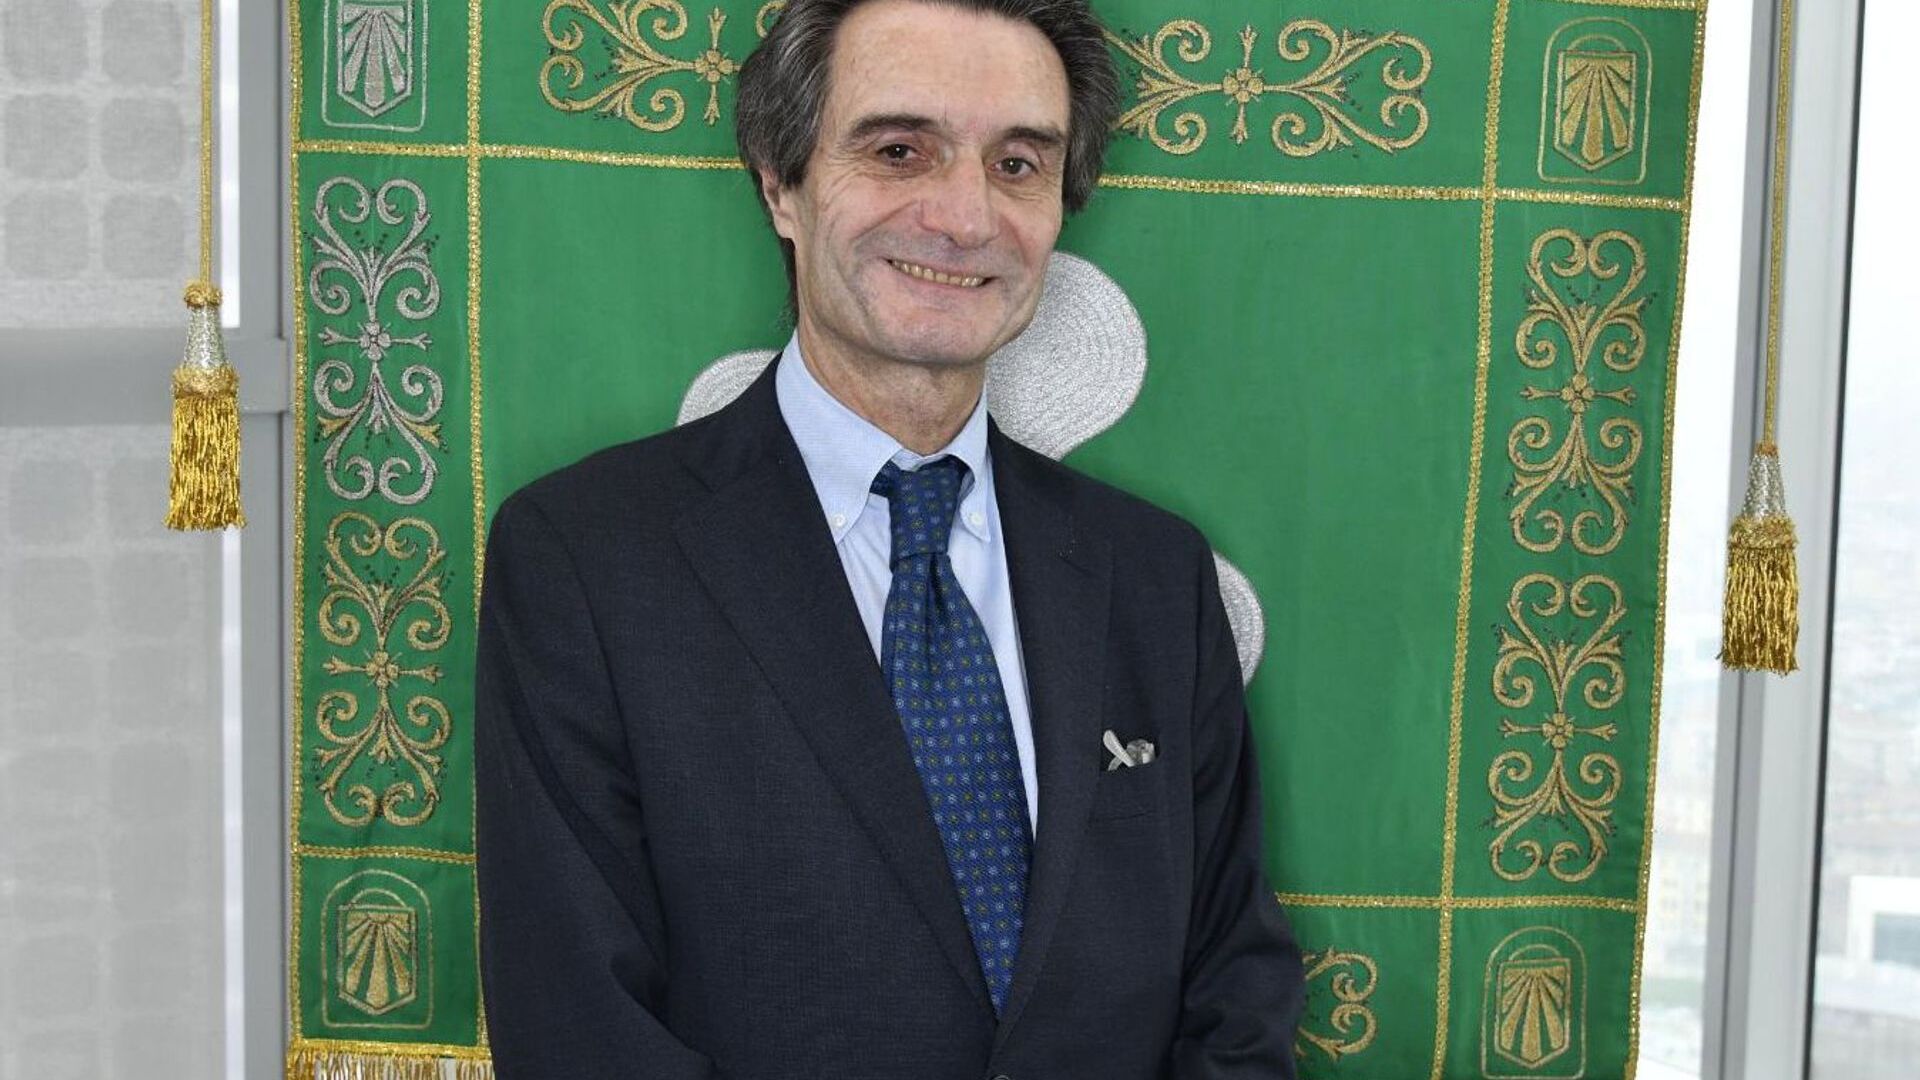 Attilio Fontana është President i Rajonit të Lombardisë